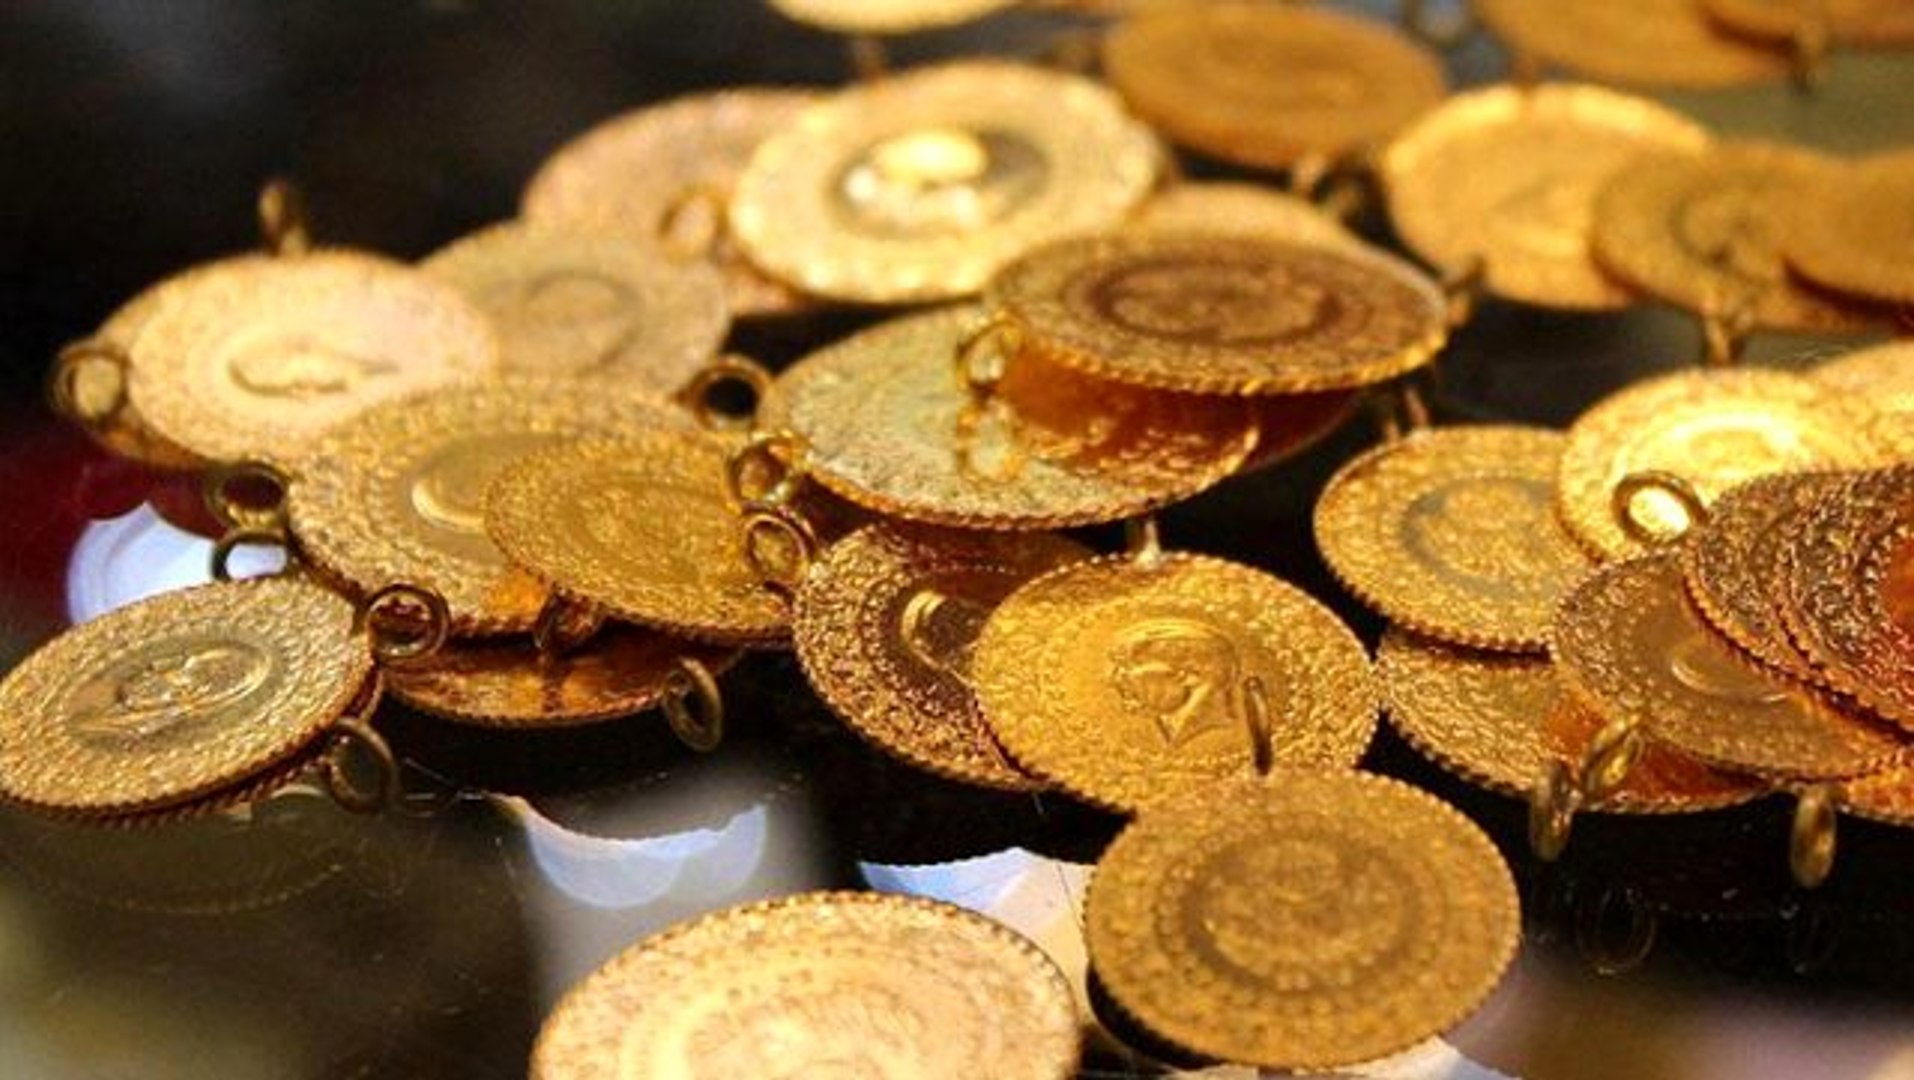 Türkiye’de gram altının fiyatı 426 TL’yi gördü ve tüm zamanların rekorunu kırdı